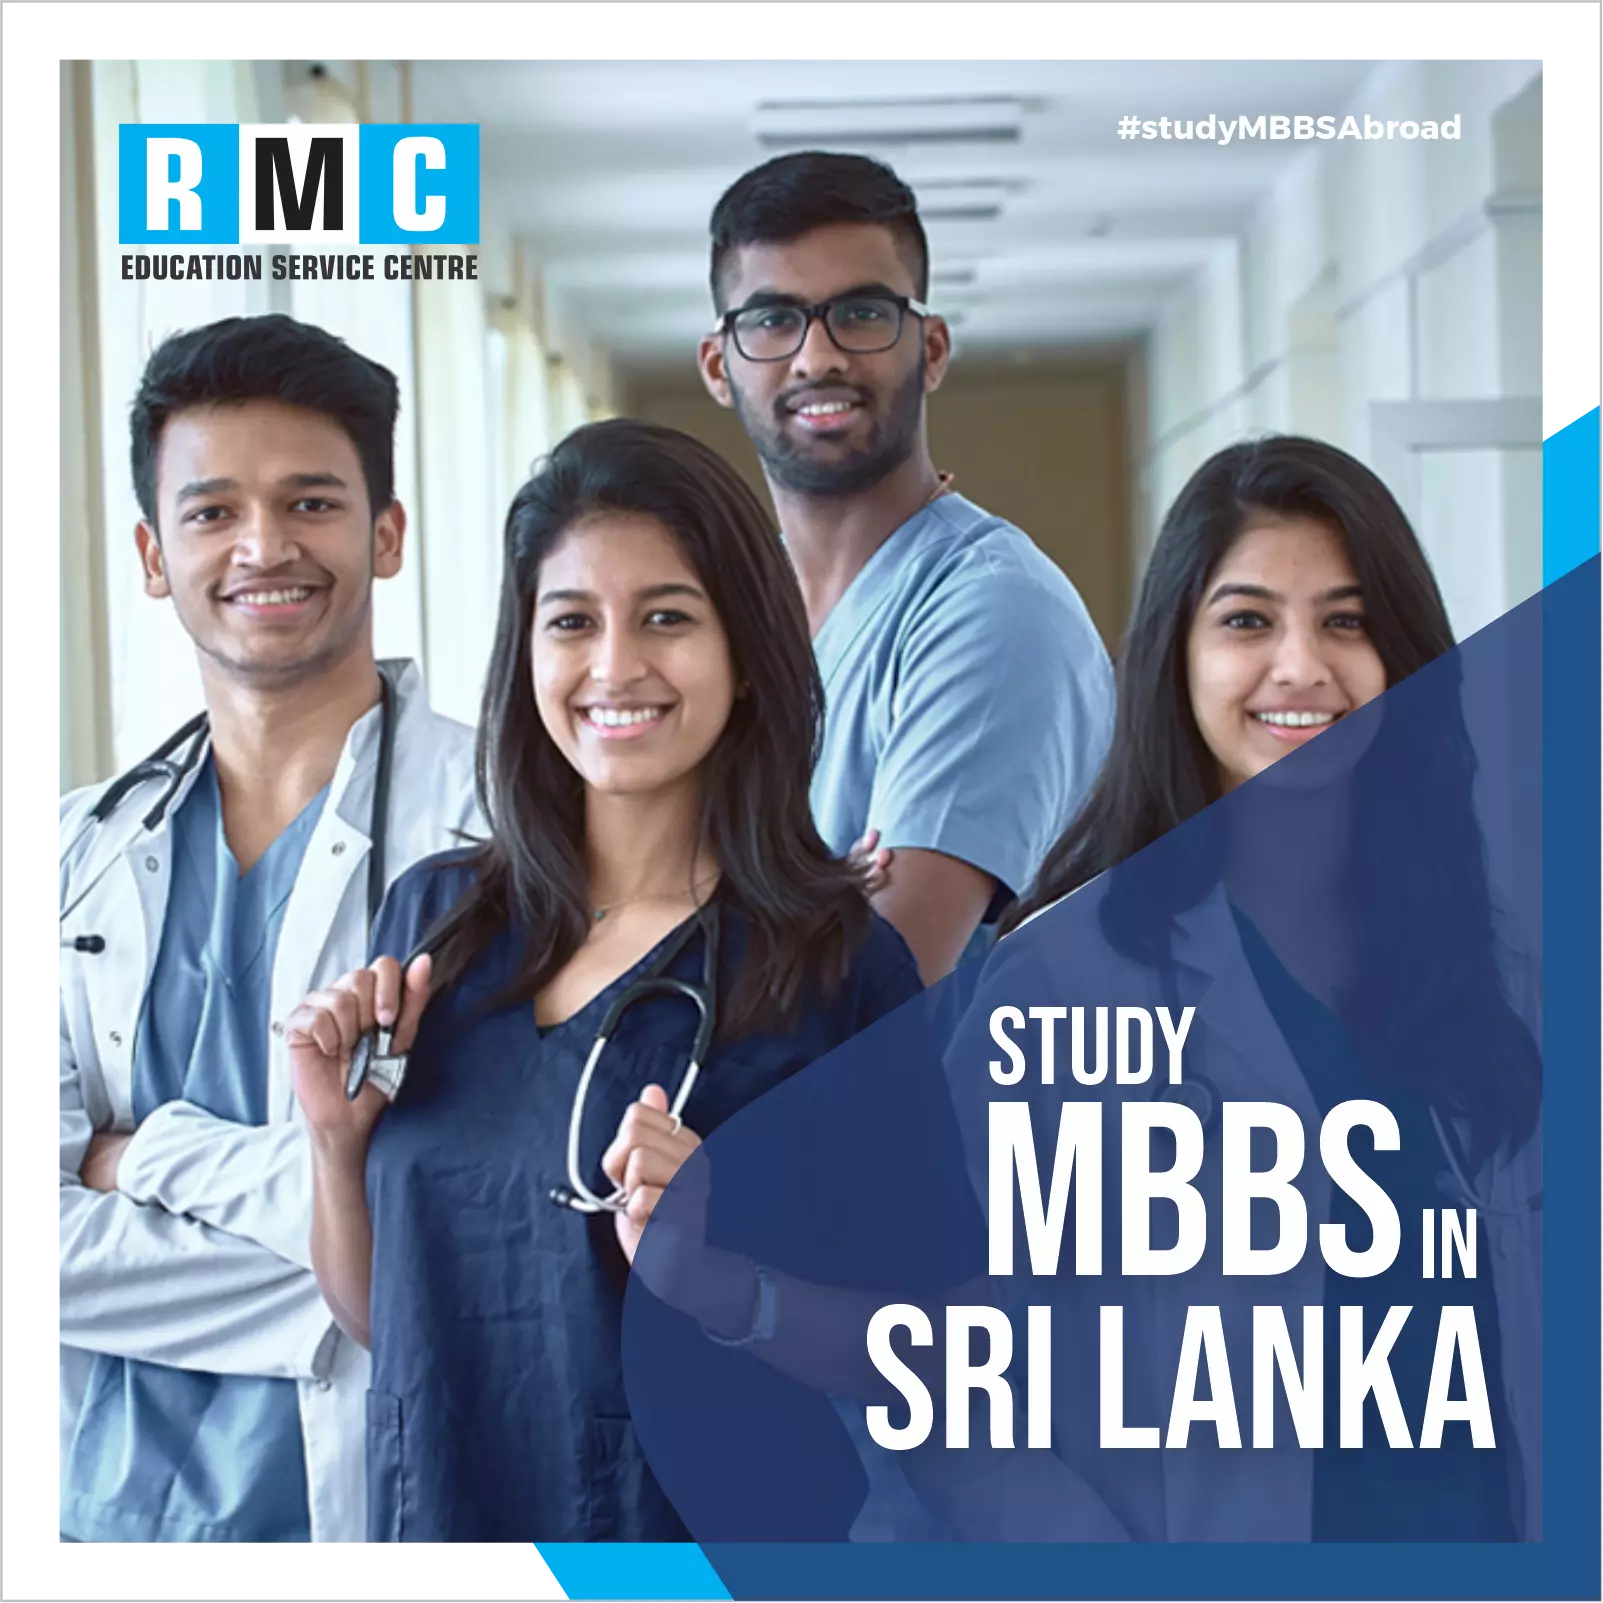 MBBS in Sri Lanka